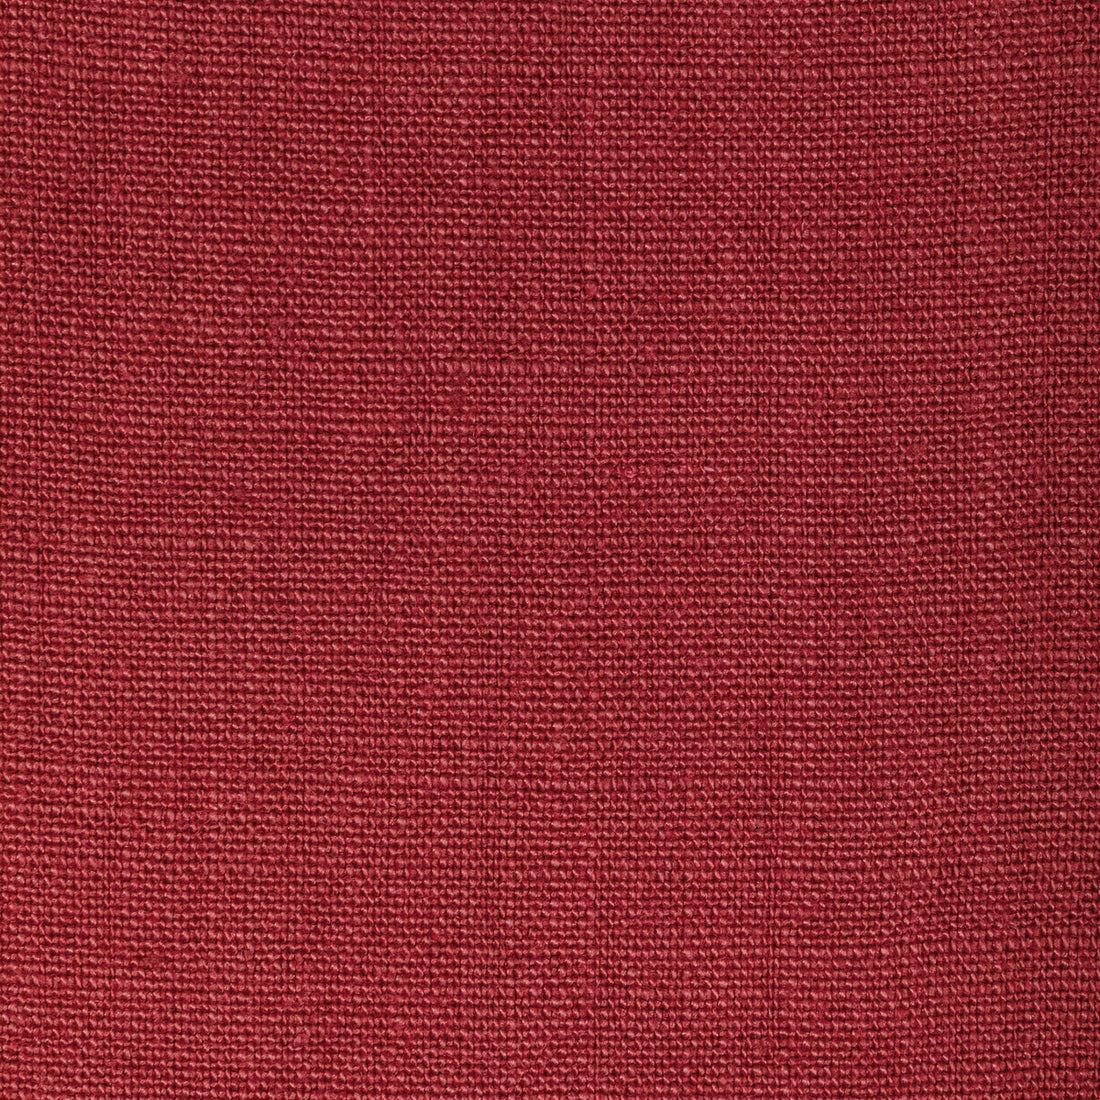 Kravet Basics fabric in 36332-9 color - pattern 36332.9.0 - by Kravet Basics